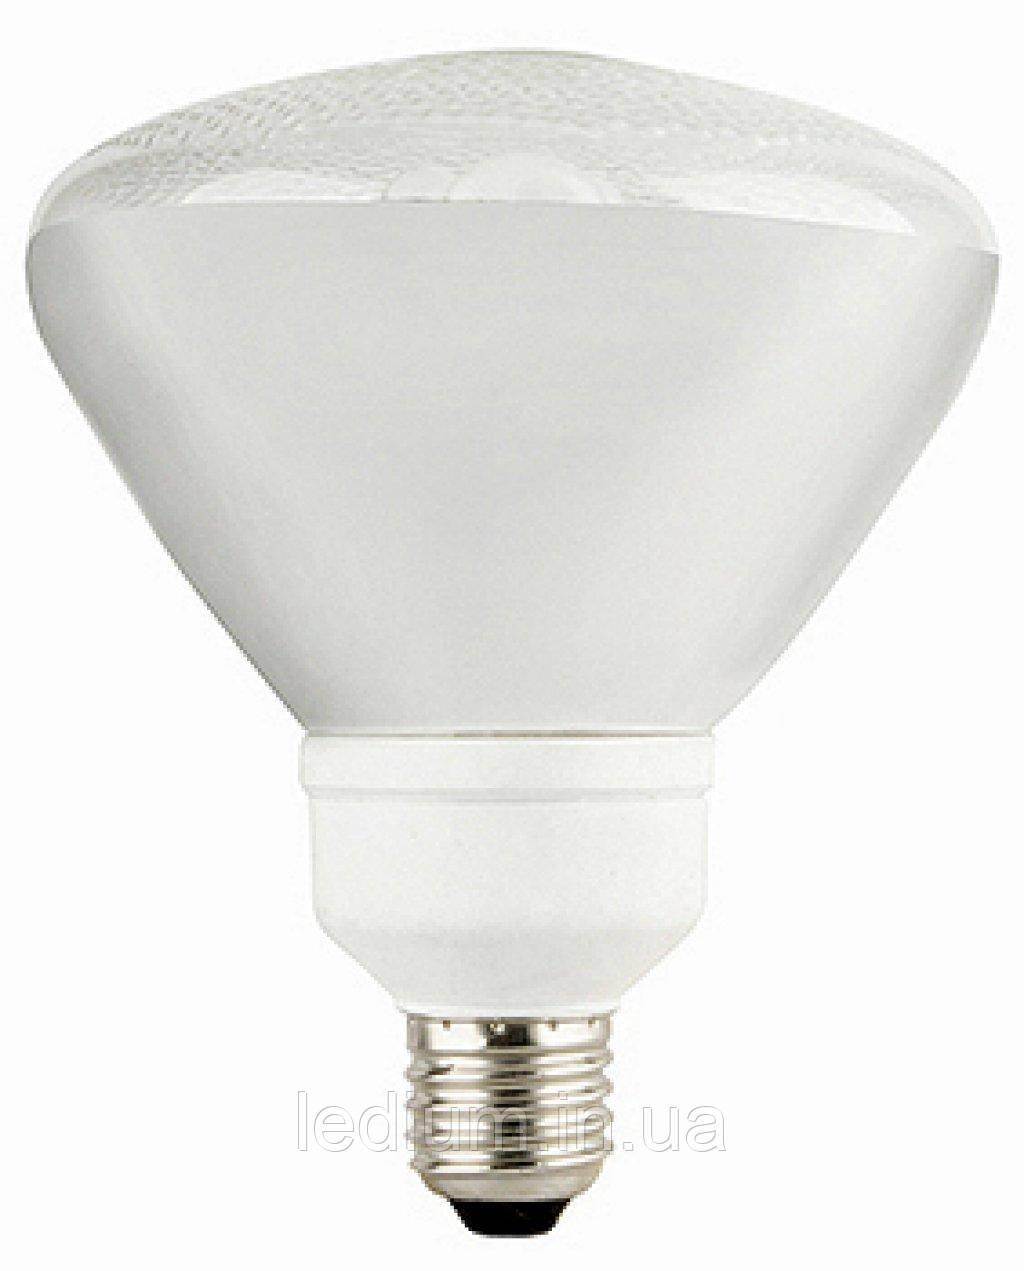 Енергоощадна лампа 20 Вт PAR38 4200К, Е27